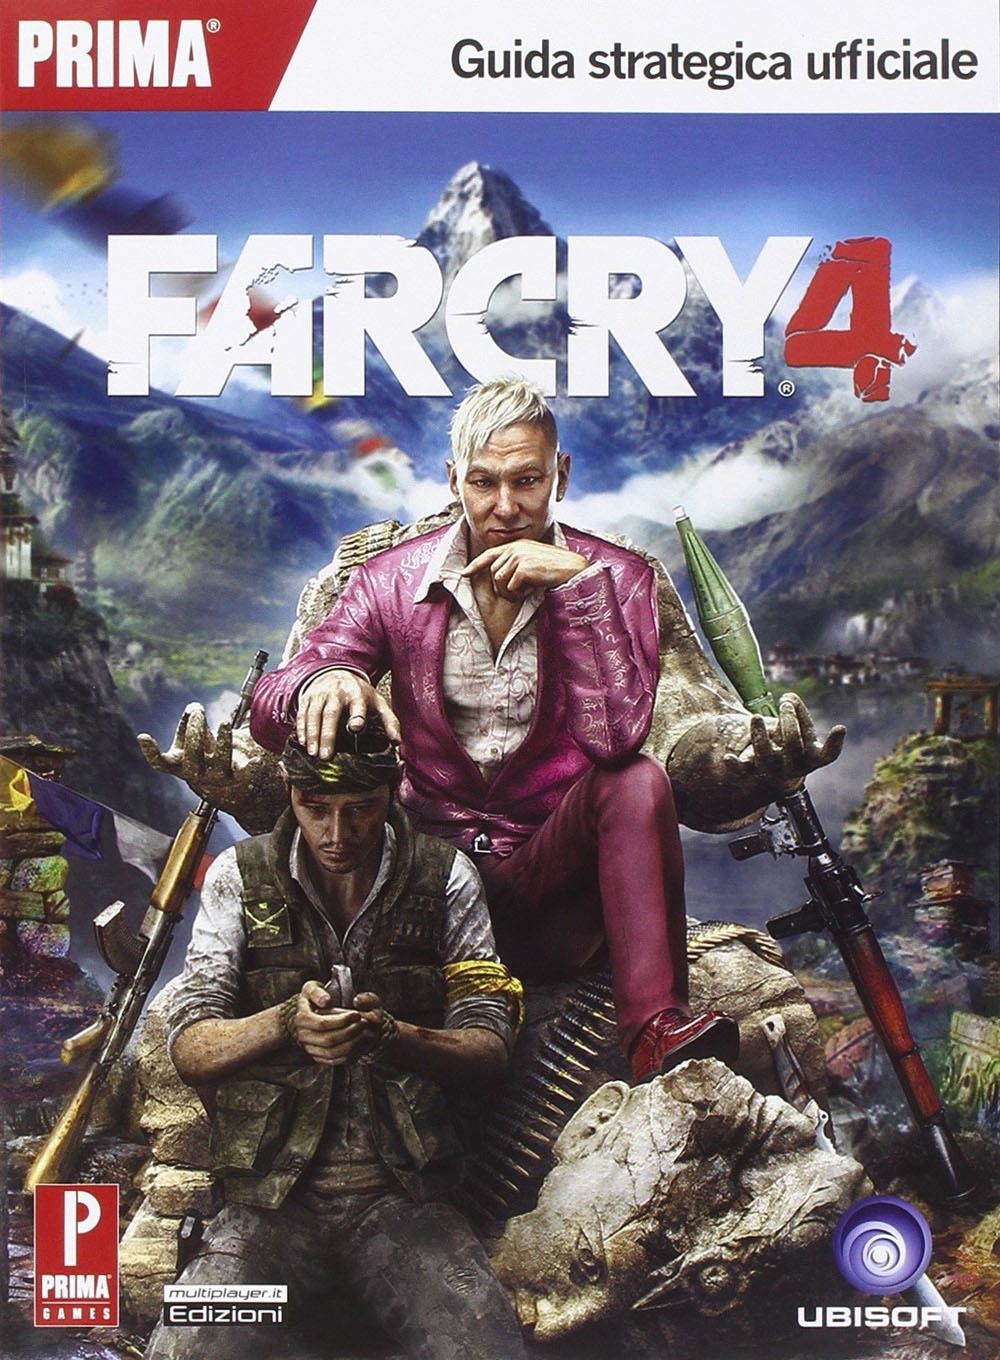 Libri Far Cry 4 (Guida Strategica) NUOVO SIGILLATO, EDIZIONE DEL 21/11/2014 SUBITO DISPONIBILE